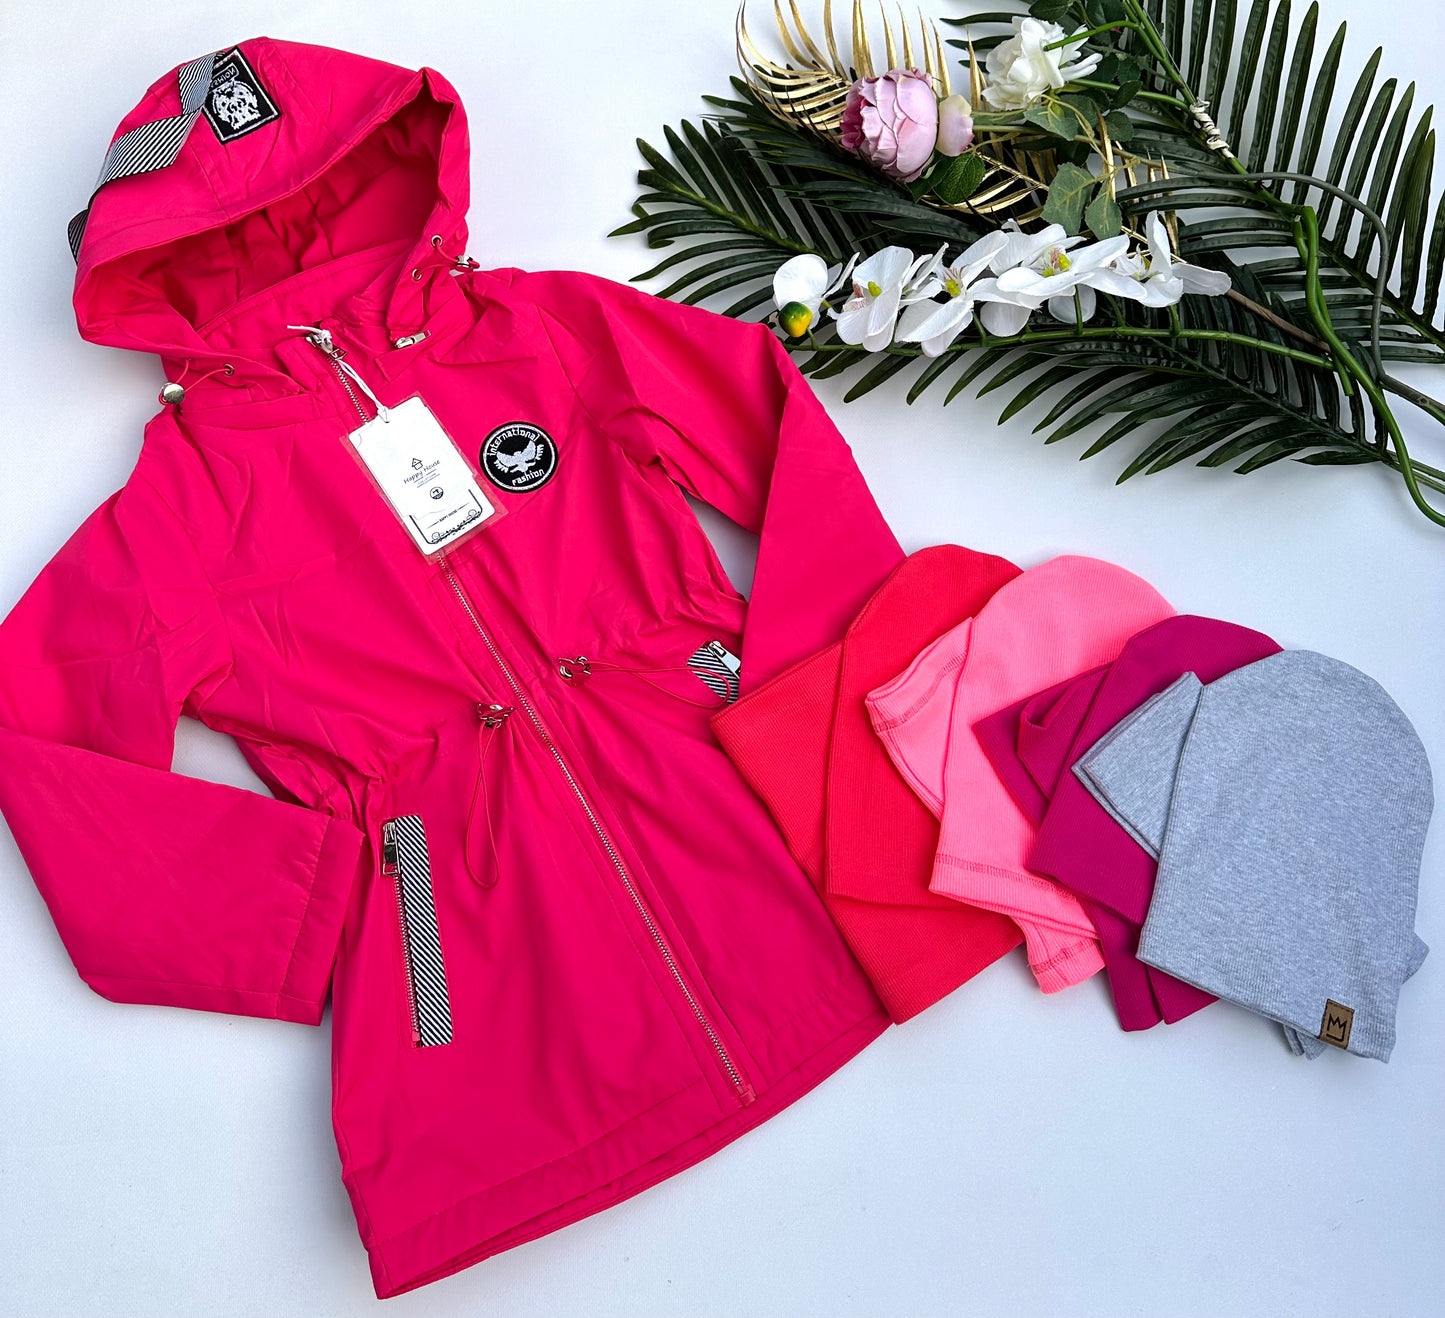 Pink spring parka jacket